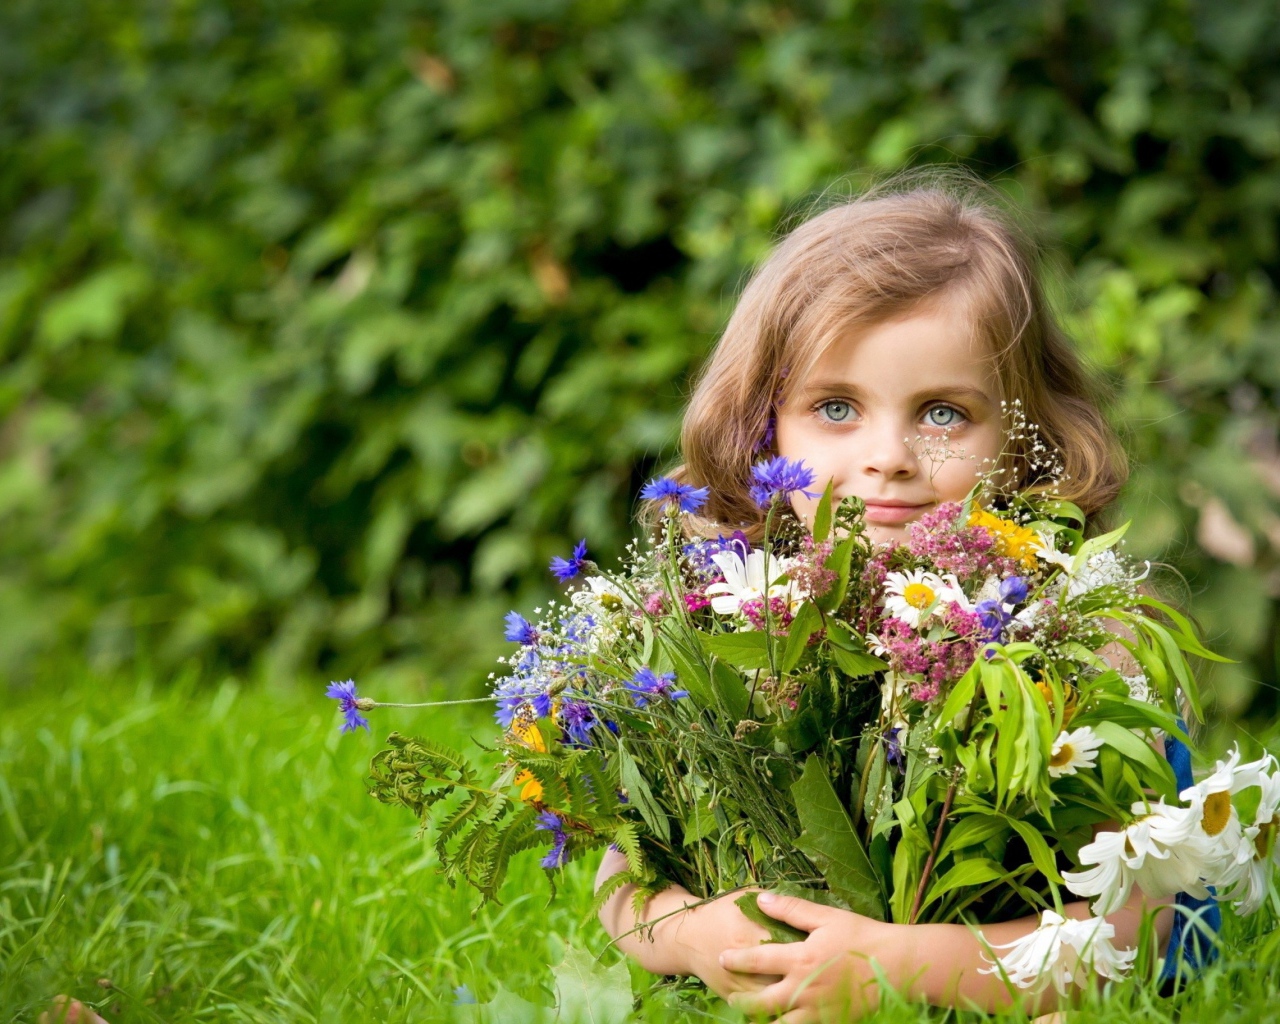 Красивая девочка с букетом цветов лежит на зеленой траве